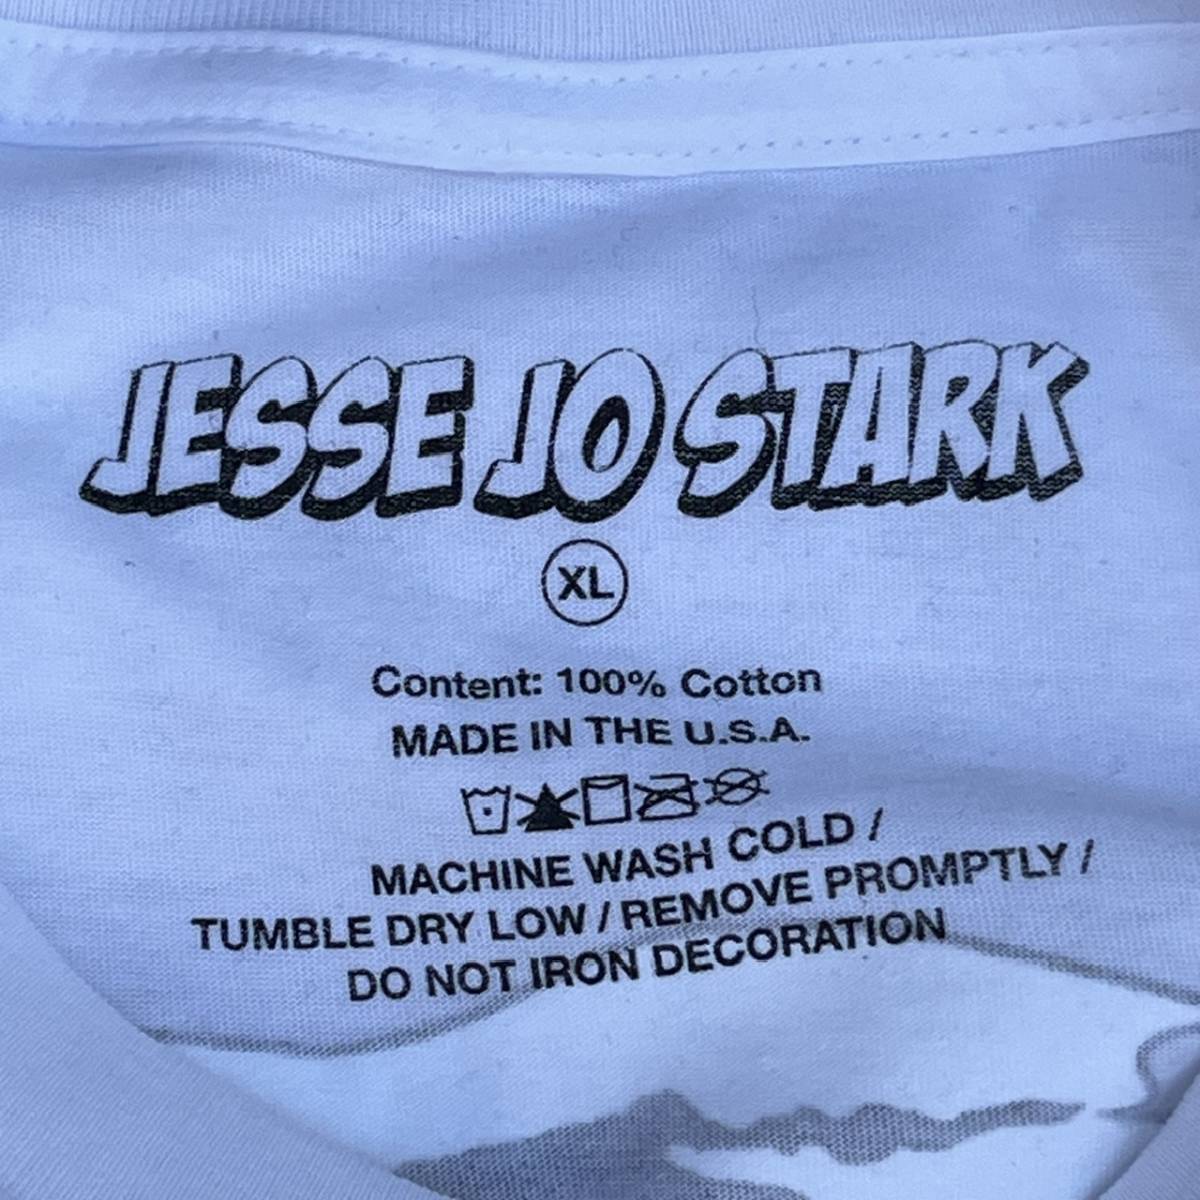 新品 JESSE JO STARK ジェシージョースターク XLサイズ DEADLY DOLL Tシャツ プリント クロムハーツ ホワイト